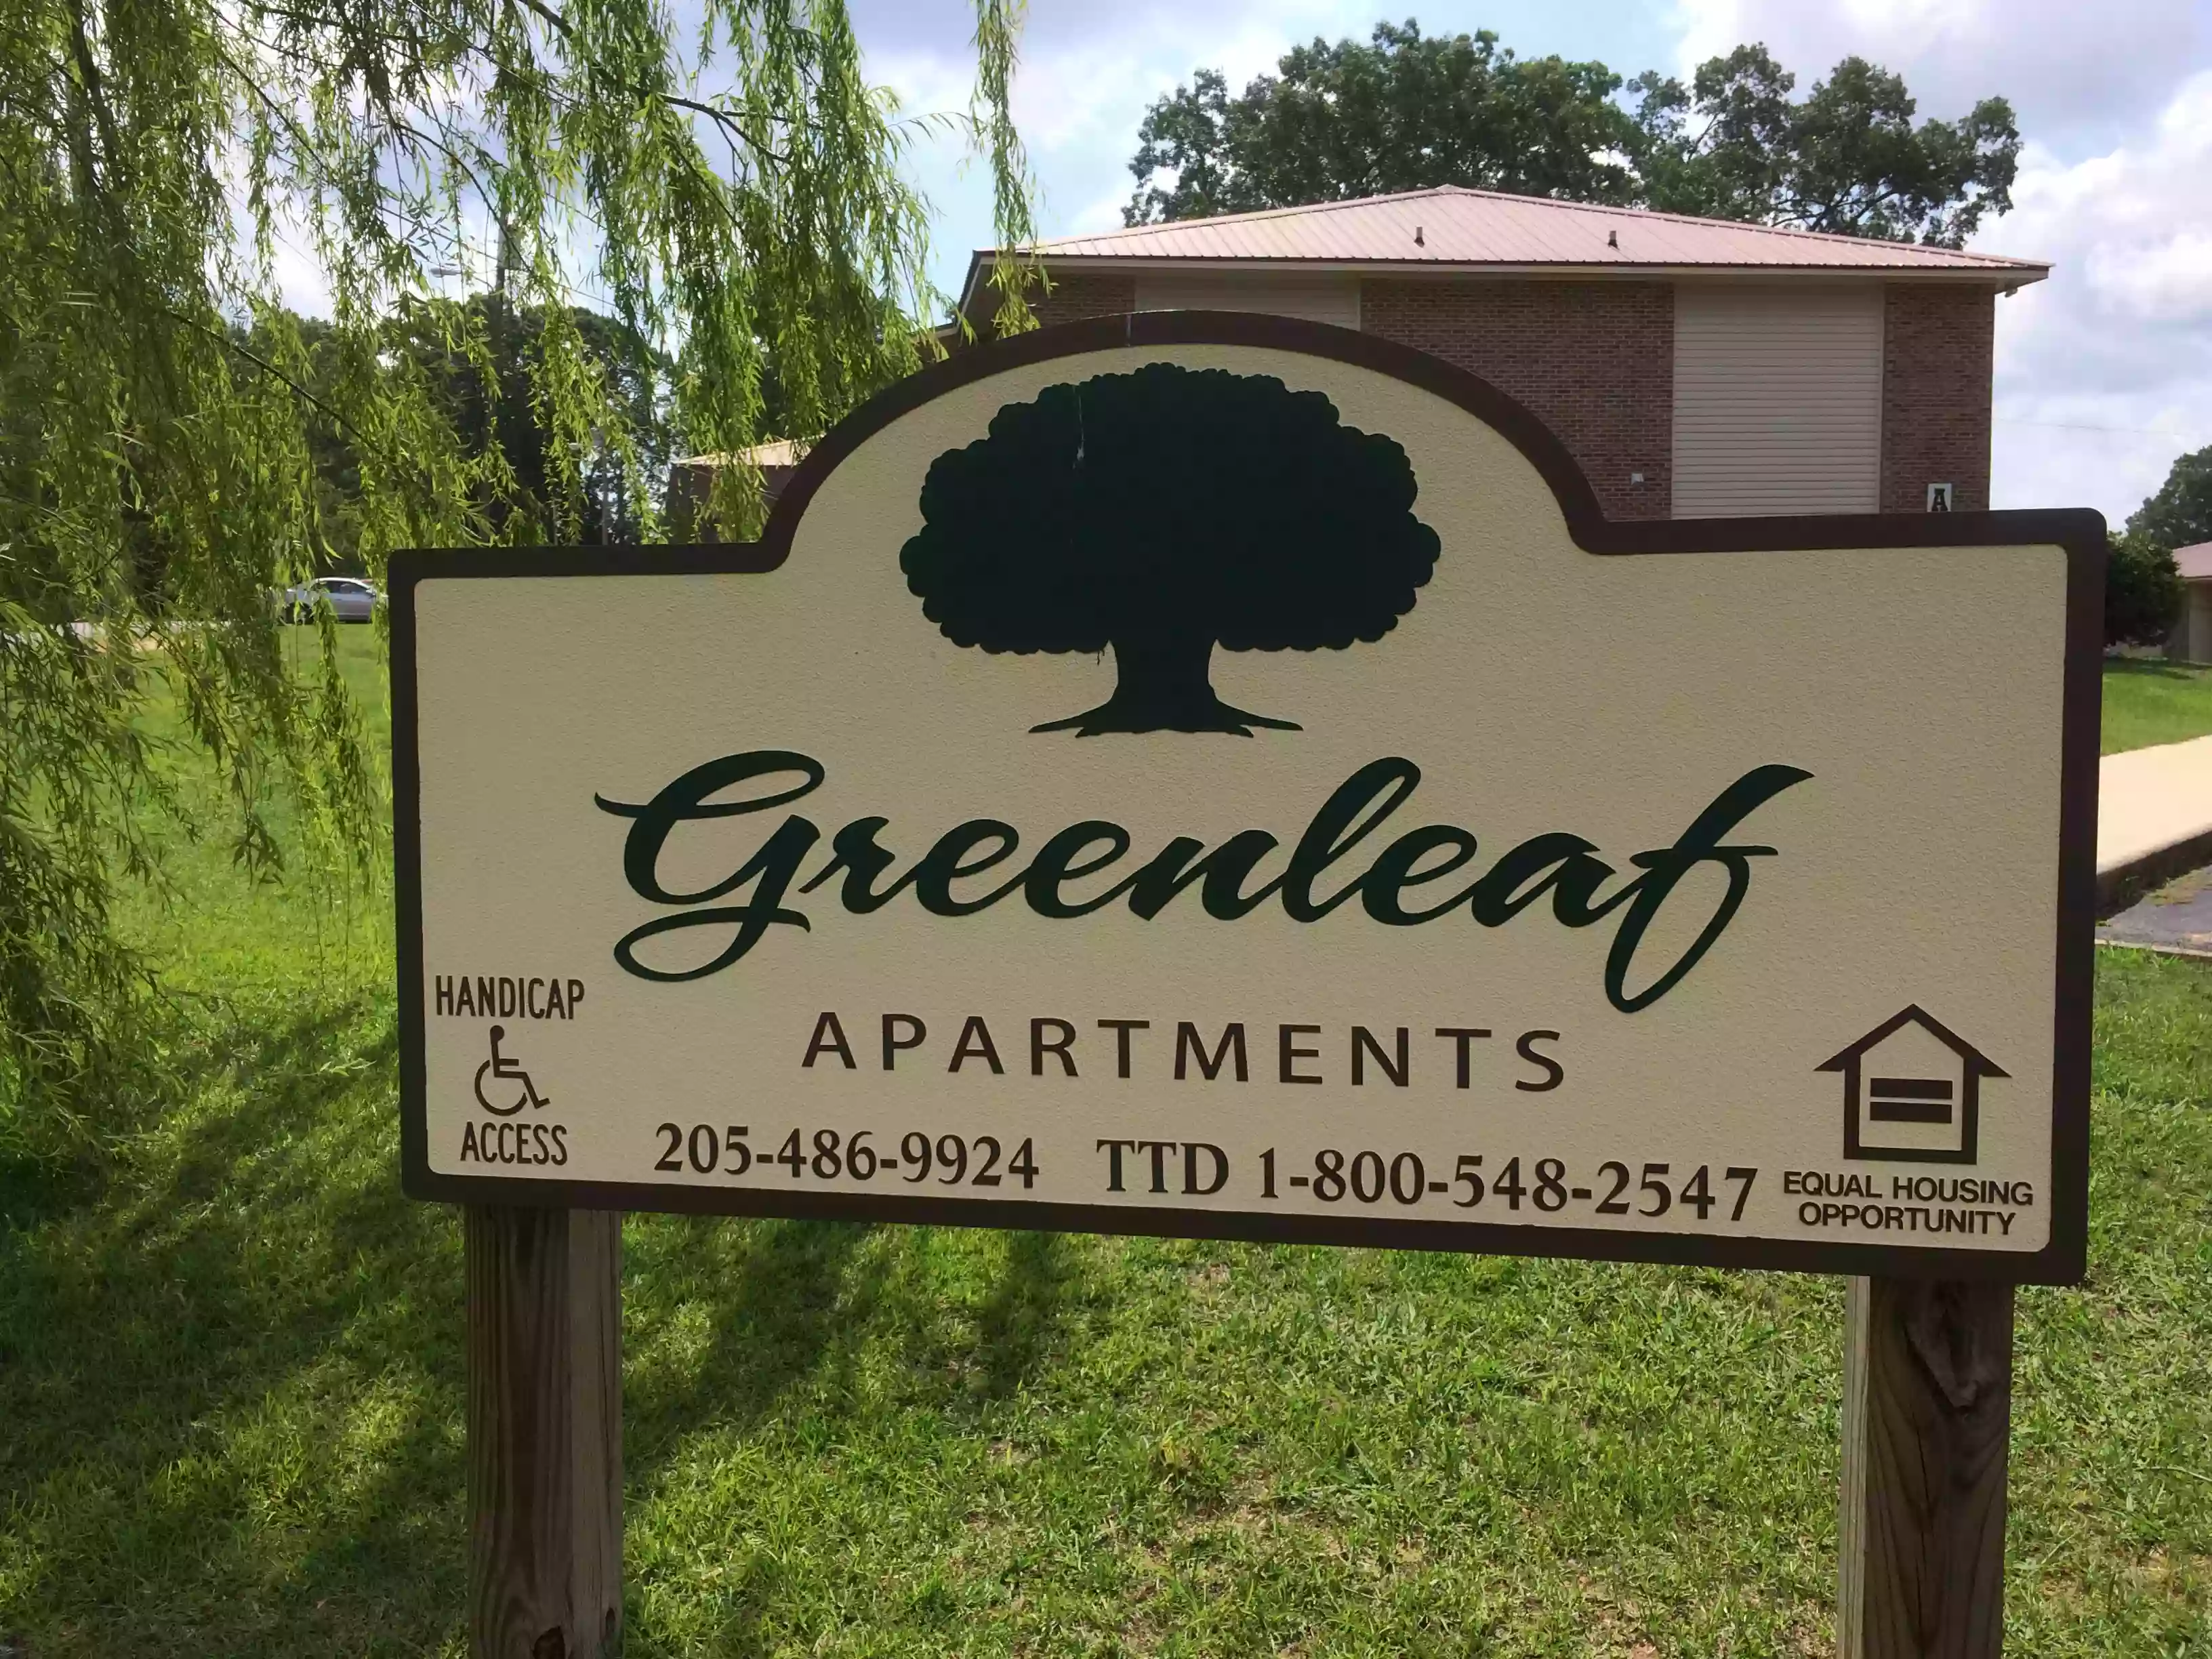 Greenleaf Apartments